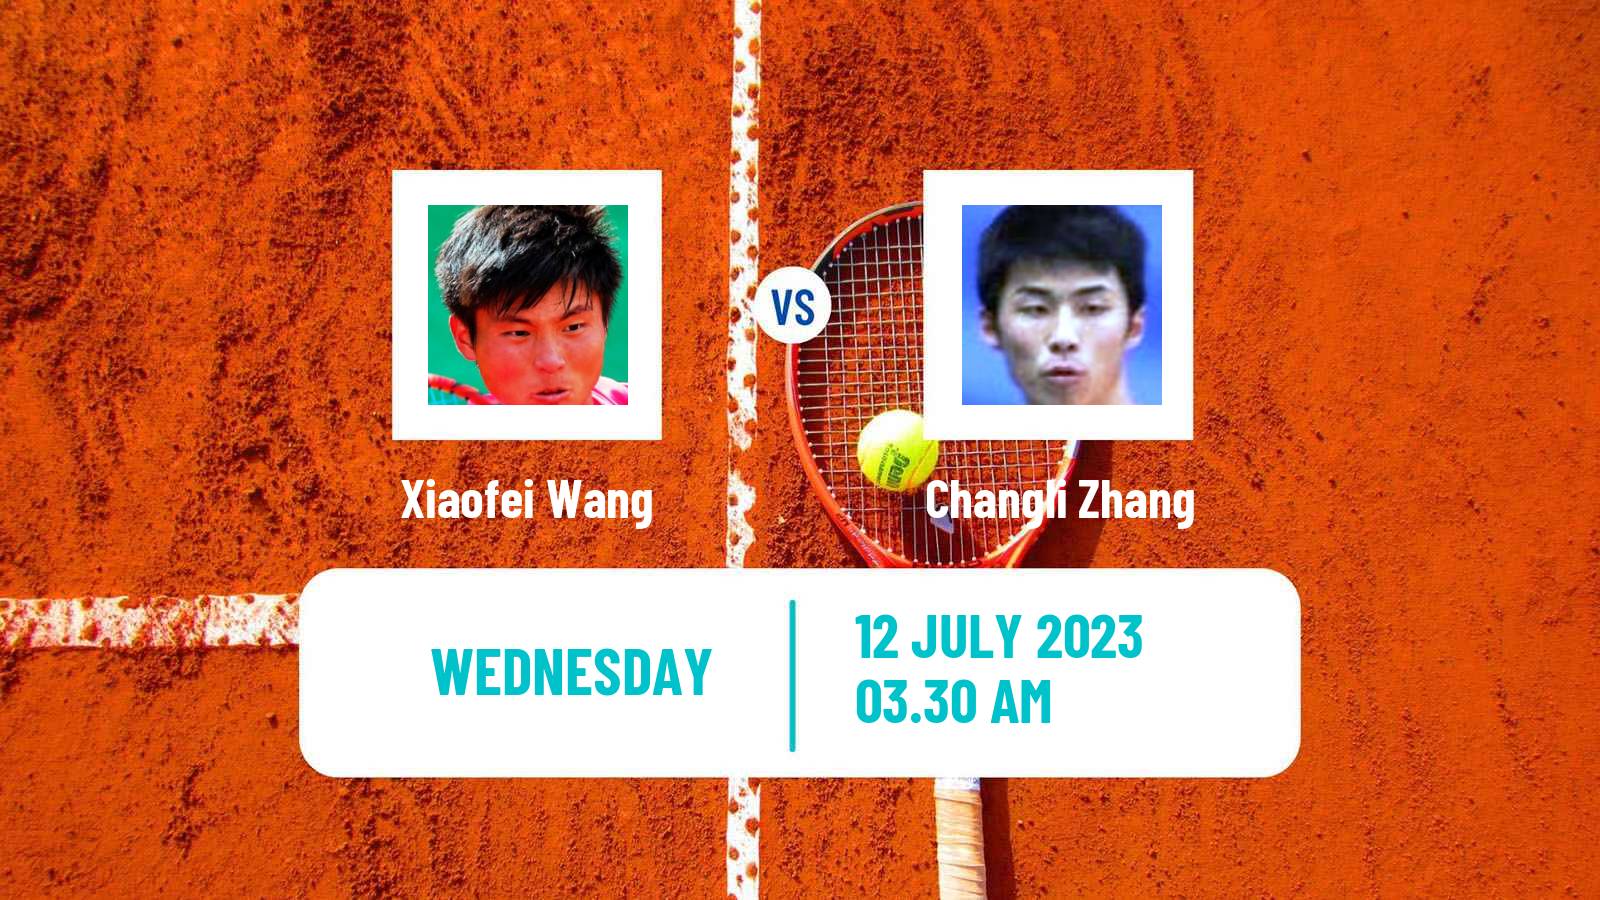 Tennis ITF M15 Shanghai Men Xiaofei Wang - Changli Zhang